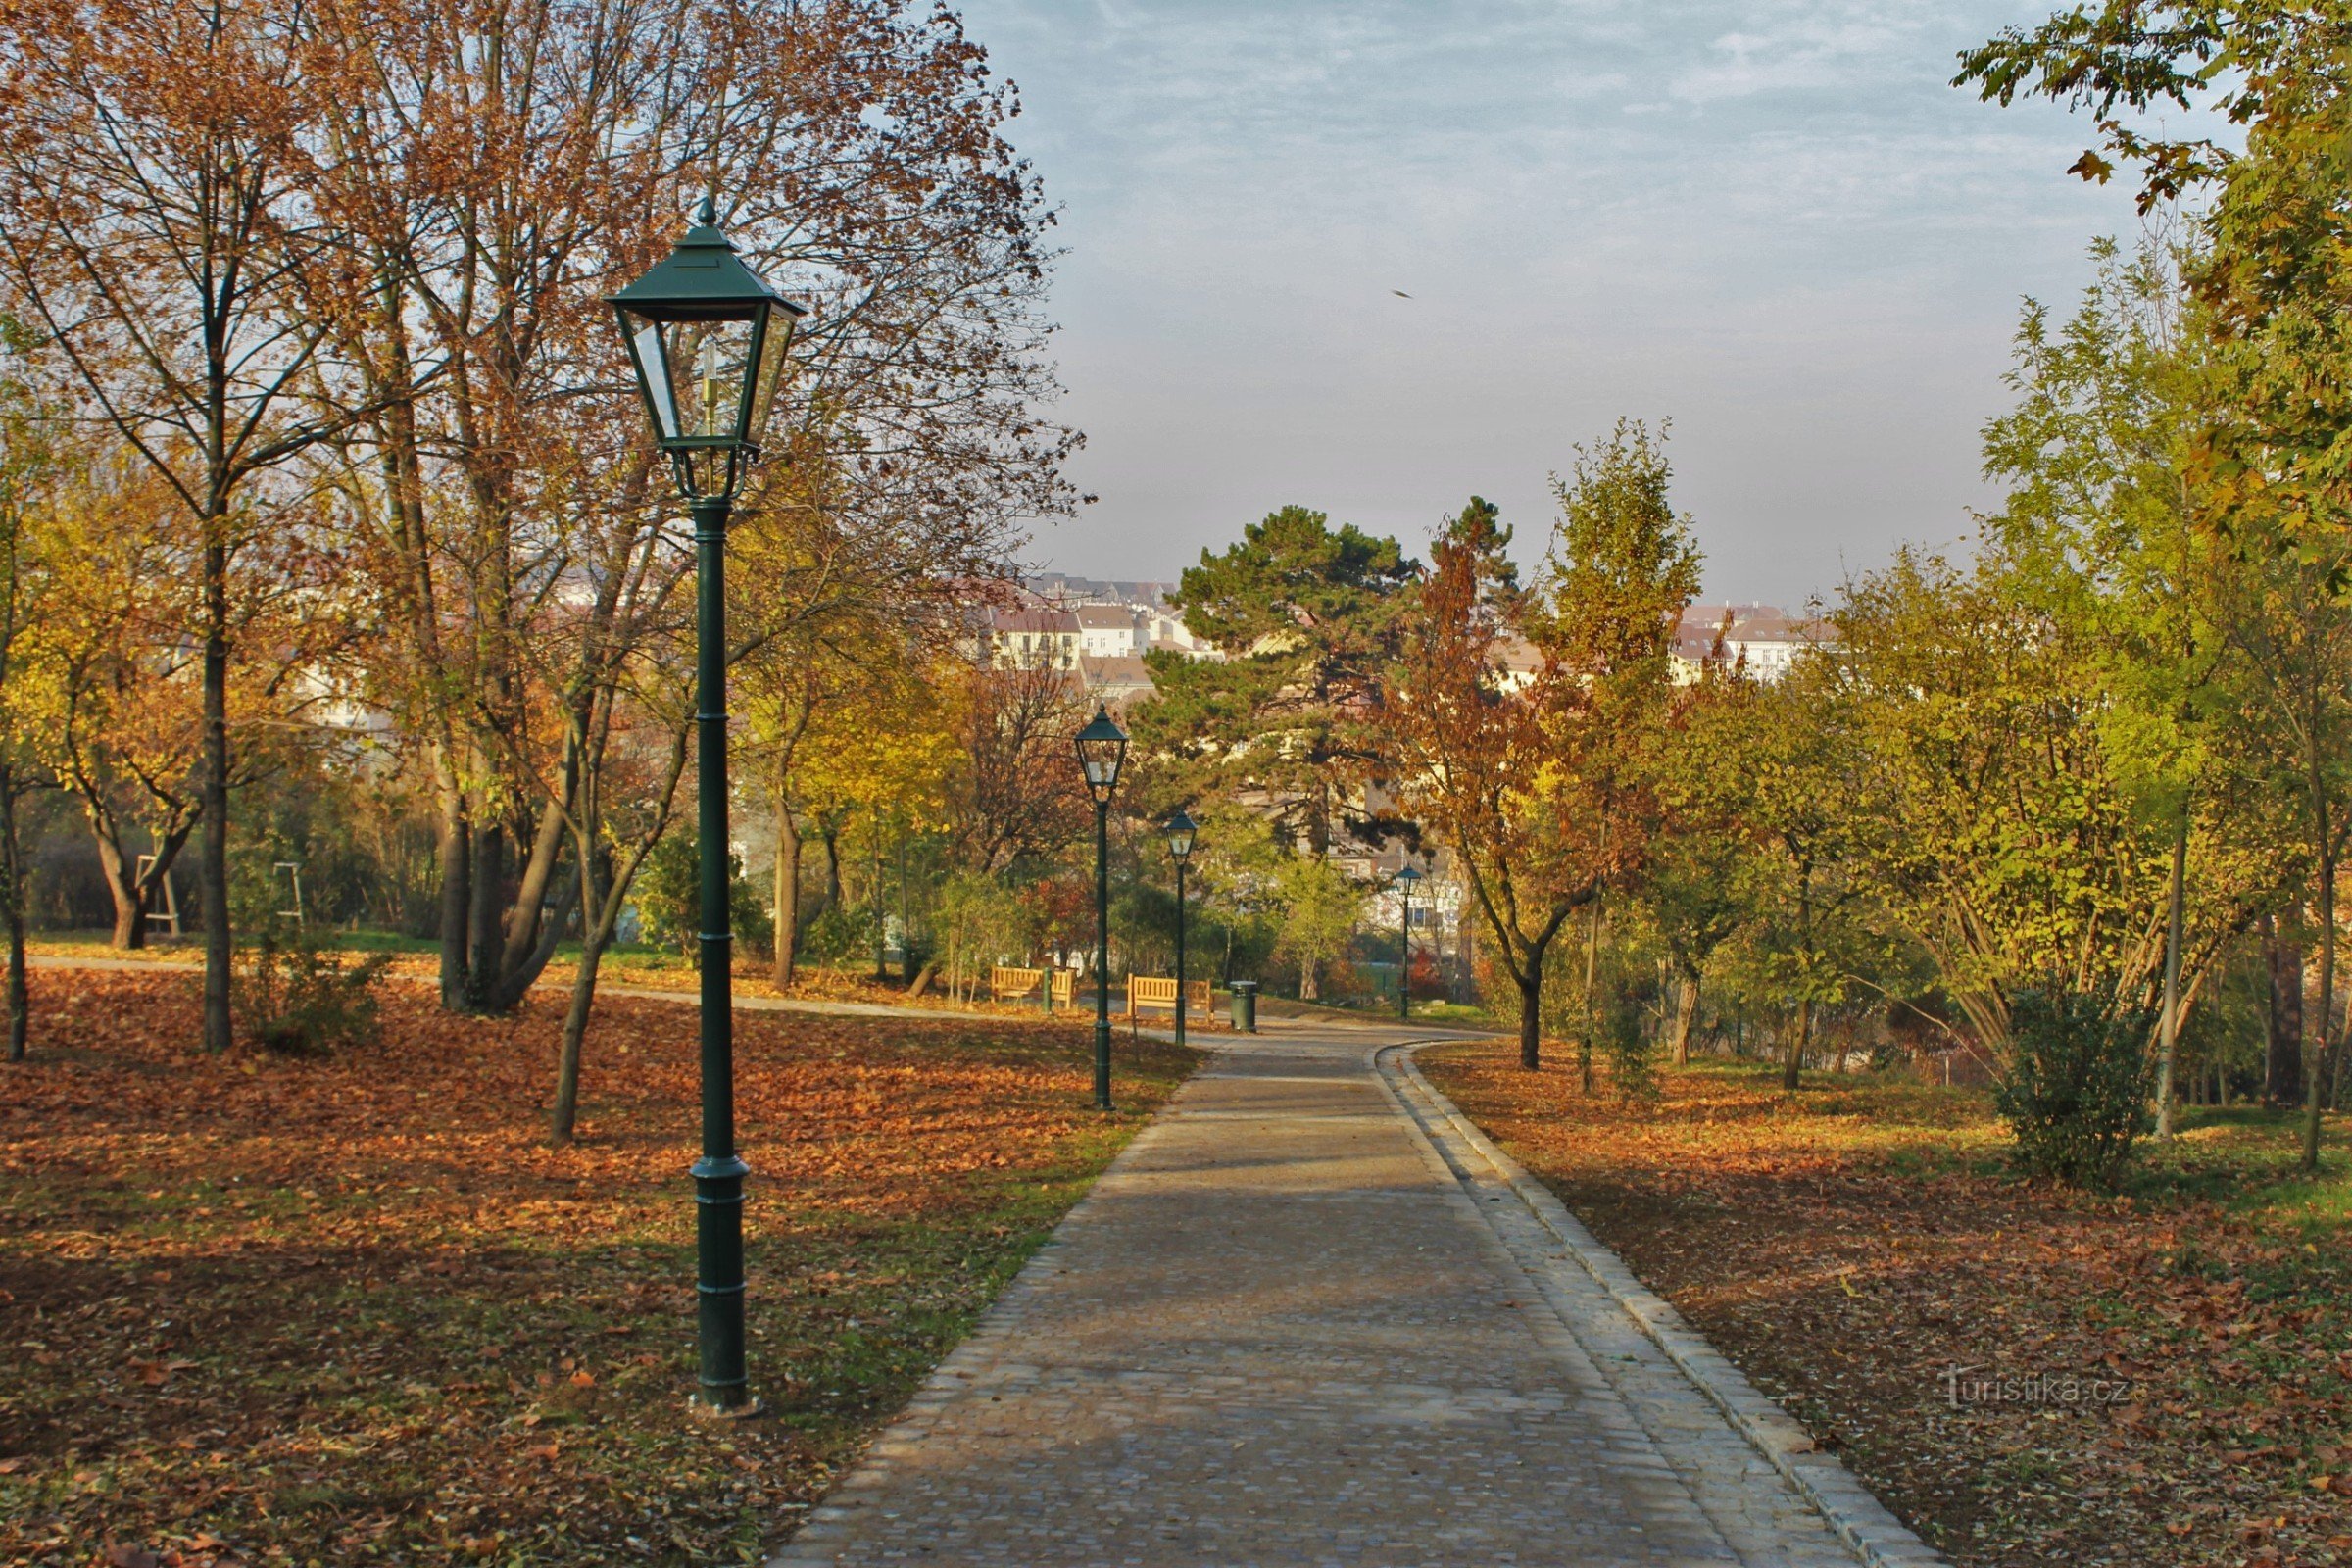 Brno-park Špilberk - northern access road